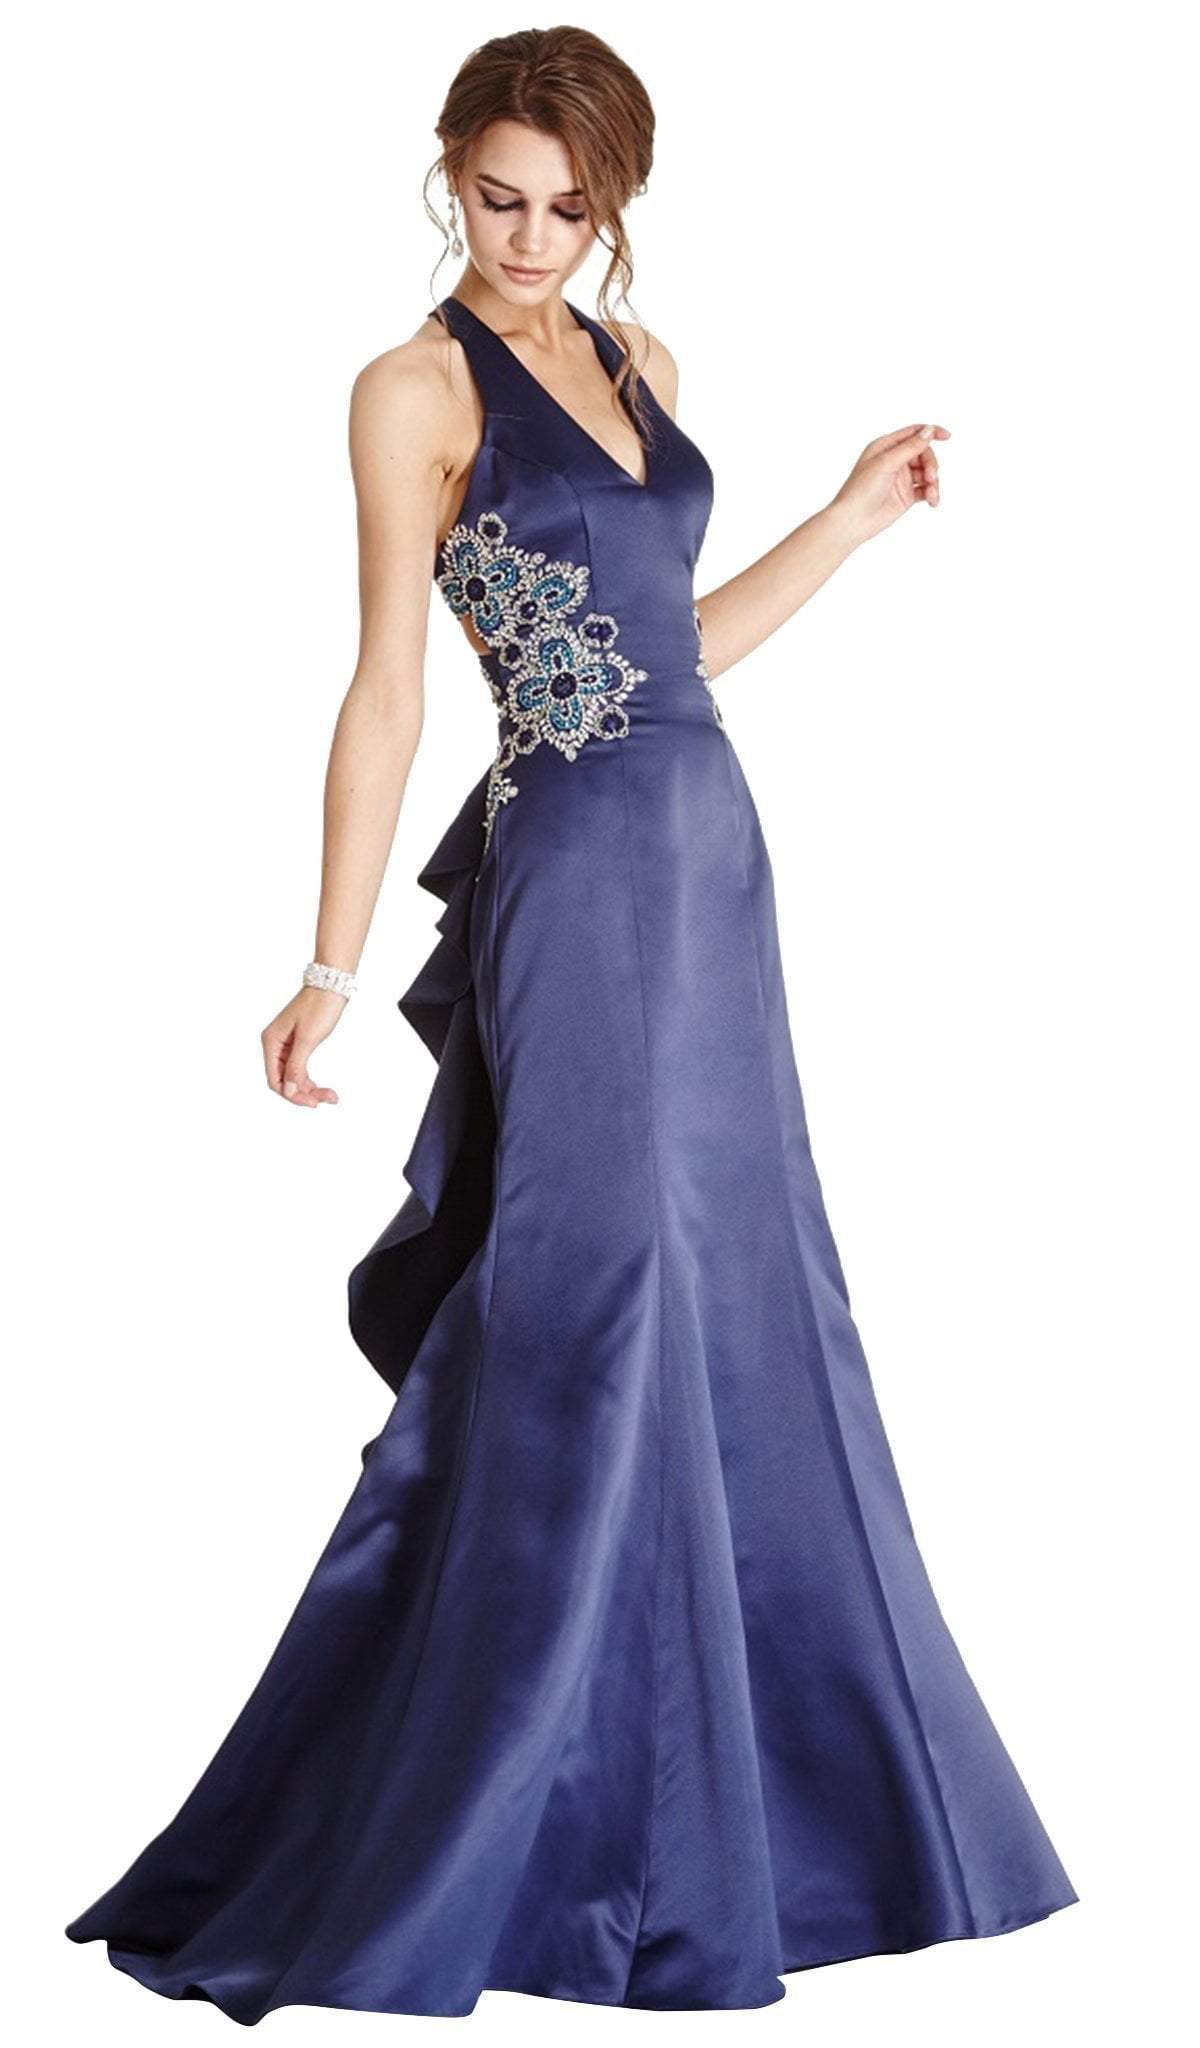 Aspeed Design - Embellished Halter V-neck Evening Dress
